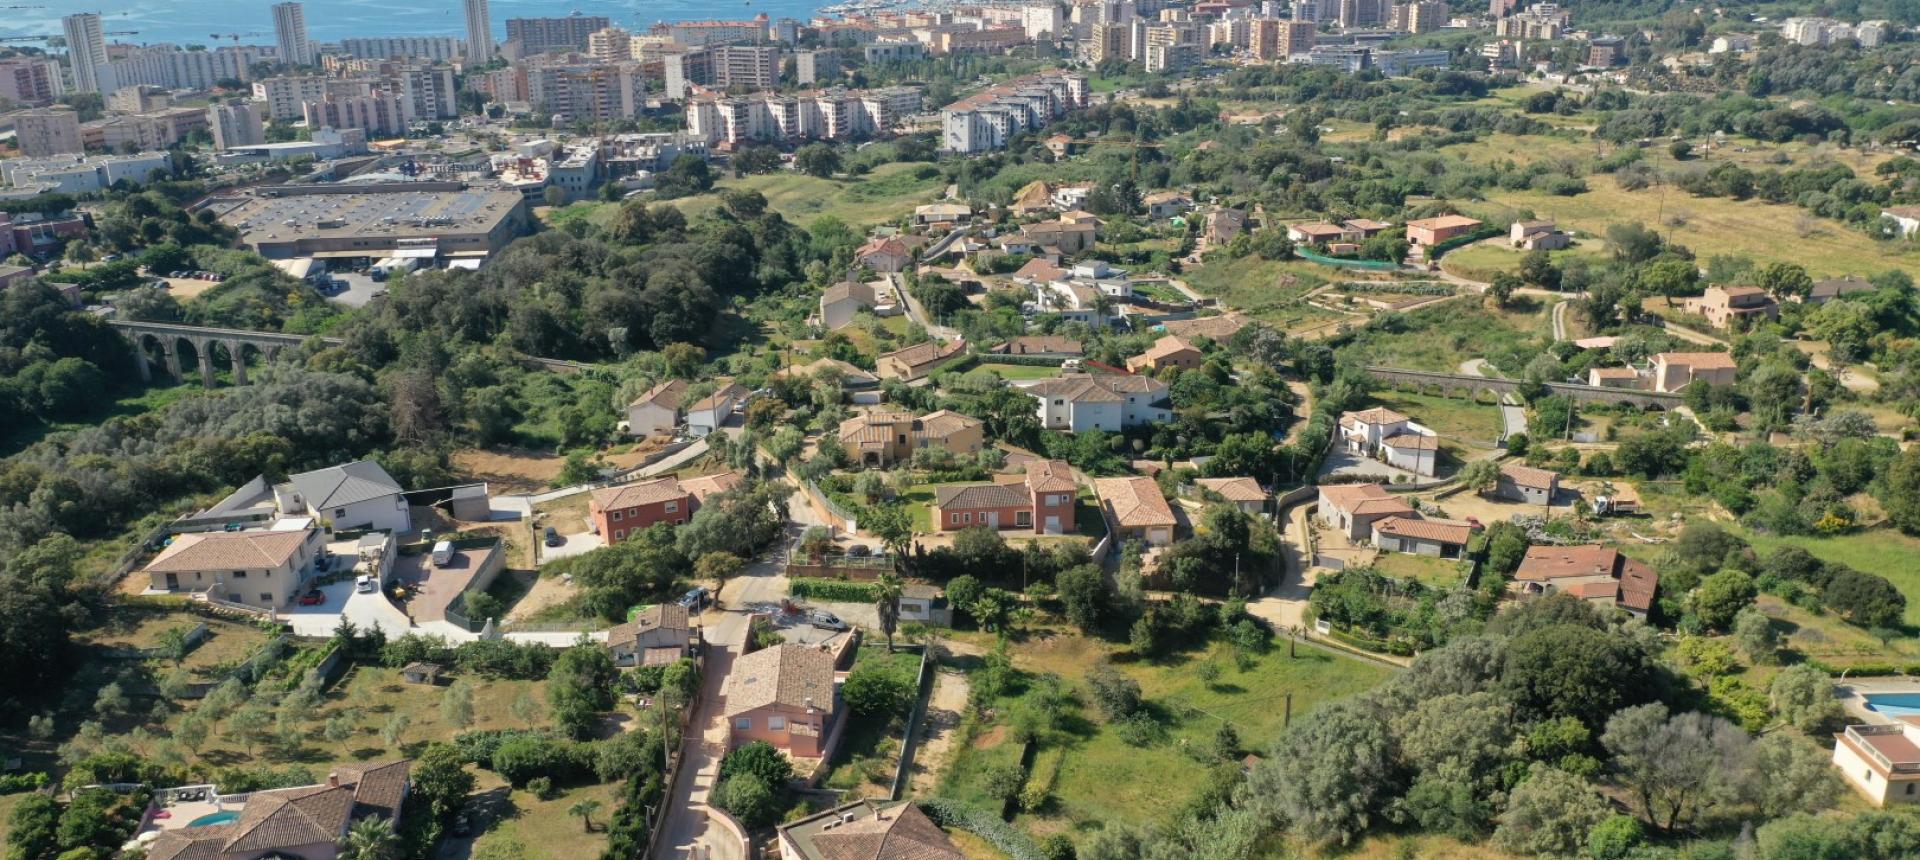 A vendre un terrain constructible à Ajaccio - Finosello